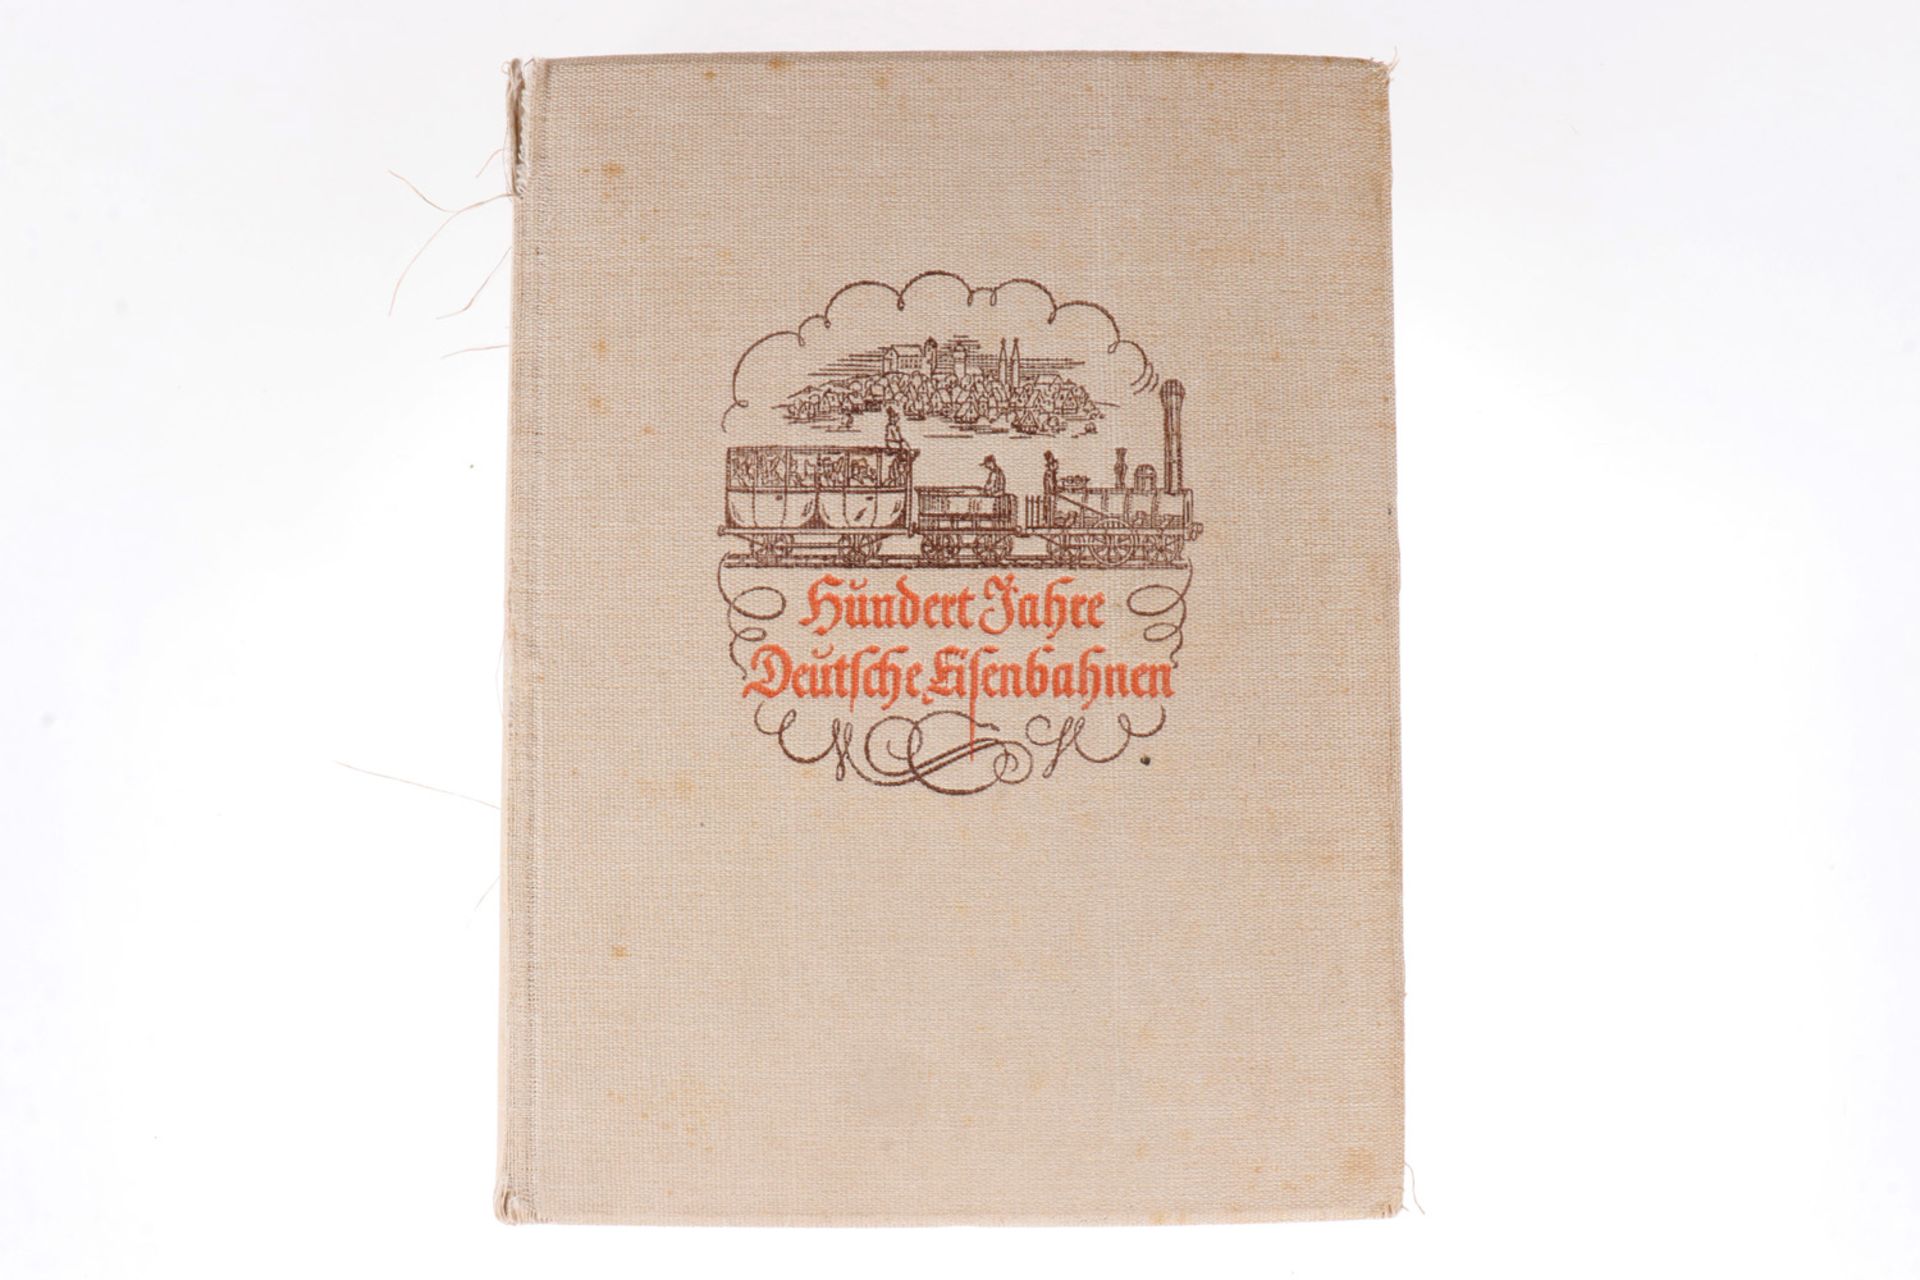 Buch "Hundert Jahre deutsche Eisenbahnen", mit Karten, Alterungsspuren